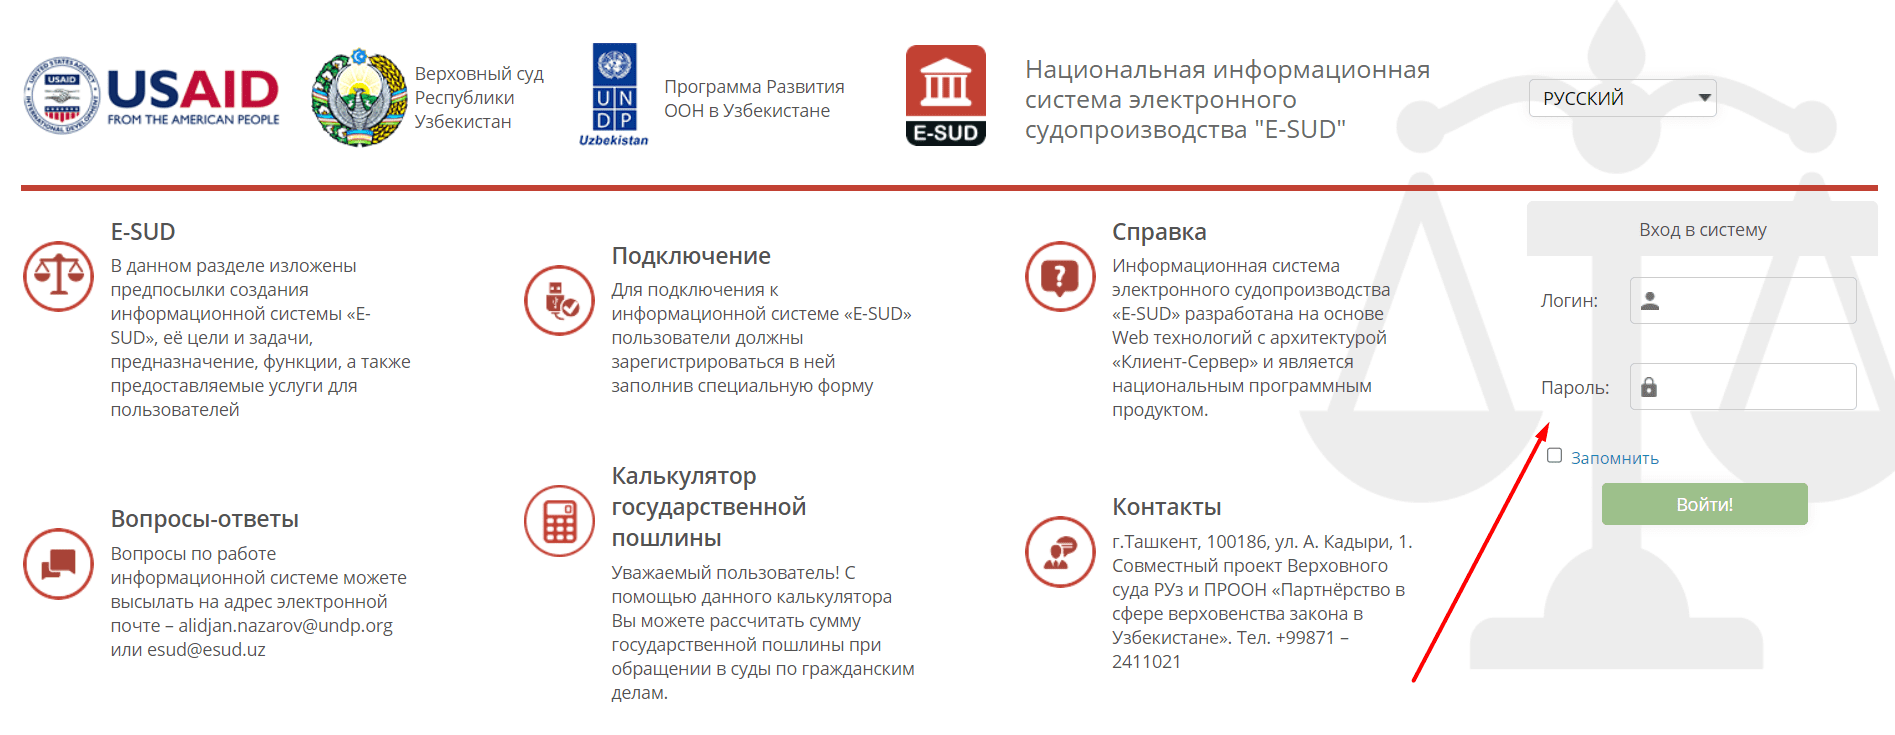 Национальная информационная система электронного судопроизводства "E-SUD" (v3.sud.uz)